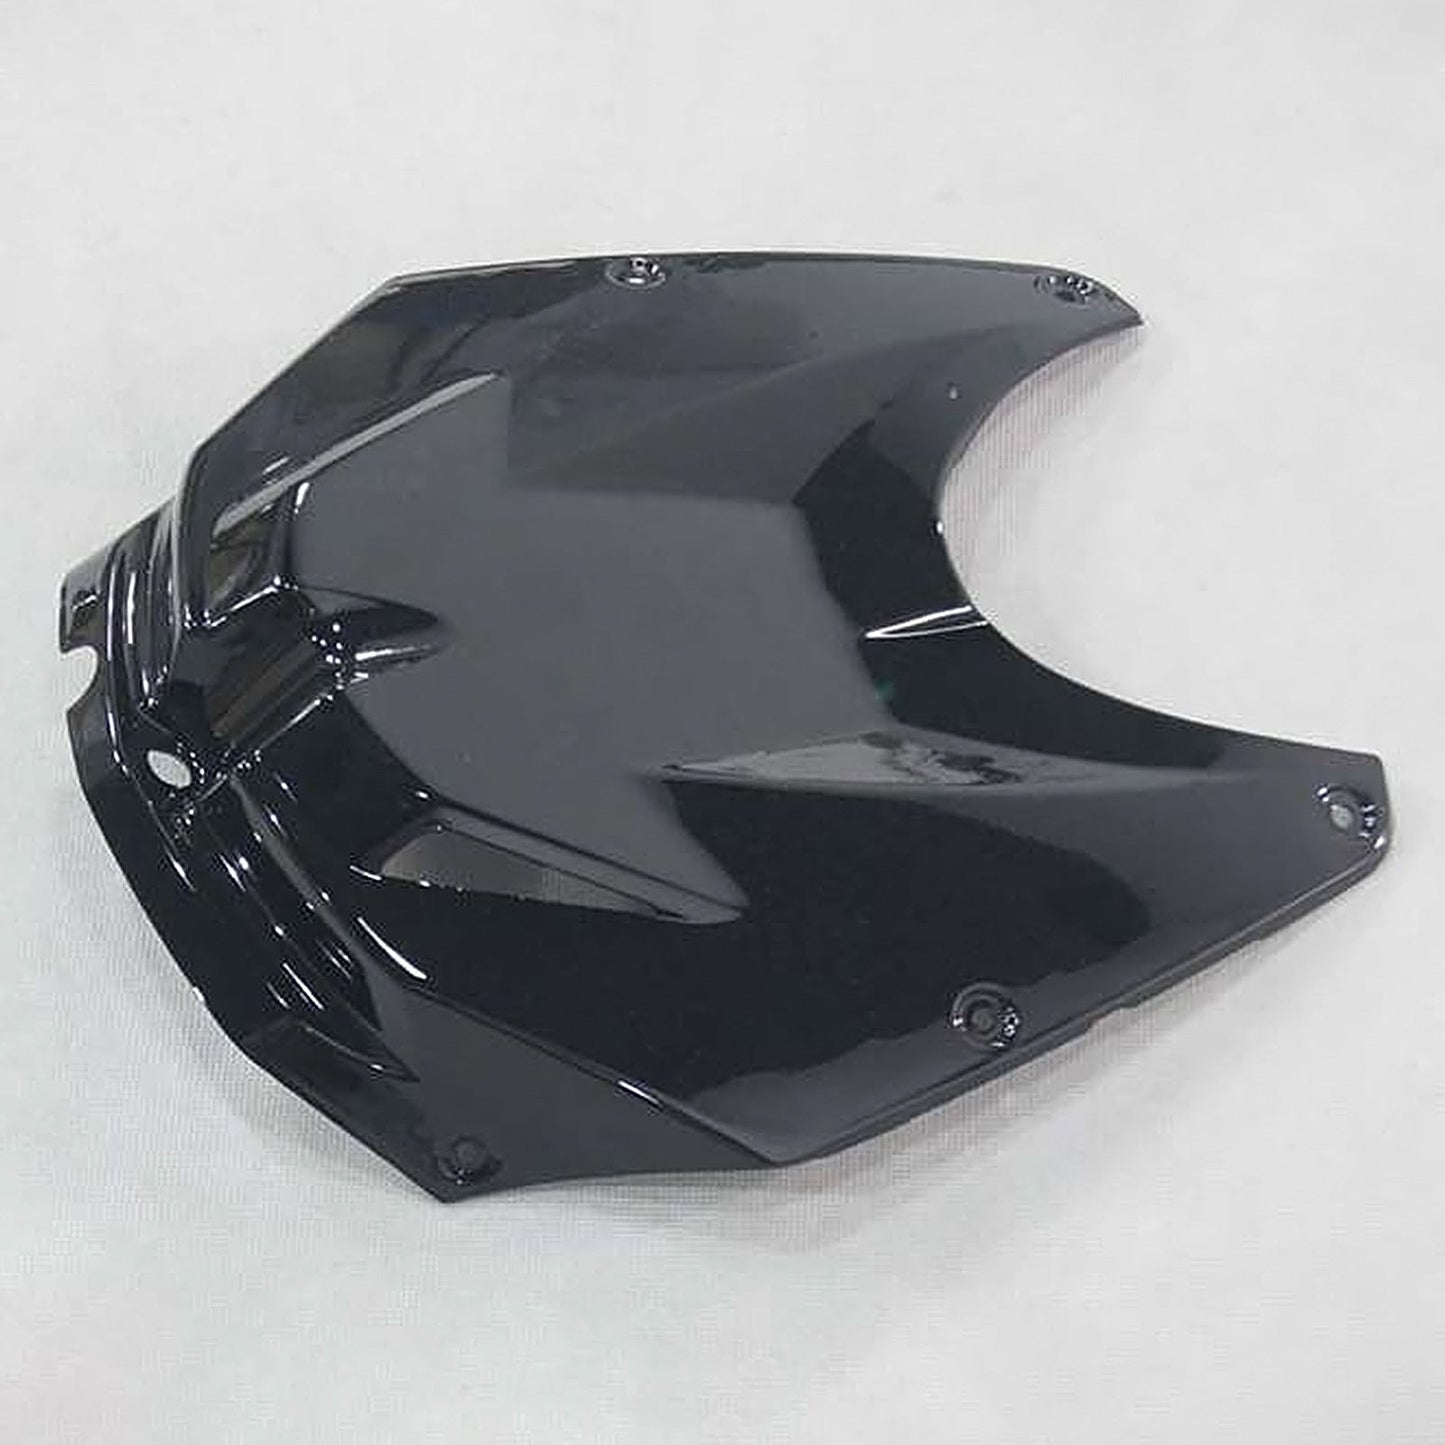 2009-2014 BMW S1000RR Amotopart Injection Fairing Kit Bodywork Plastic ABS Black For